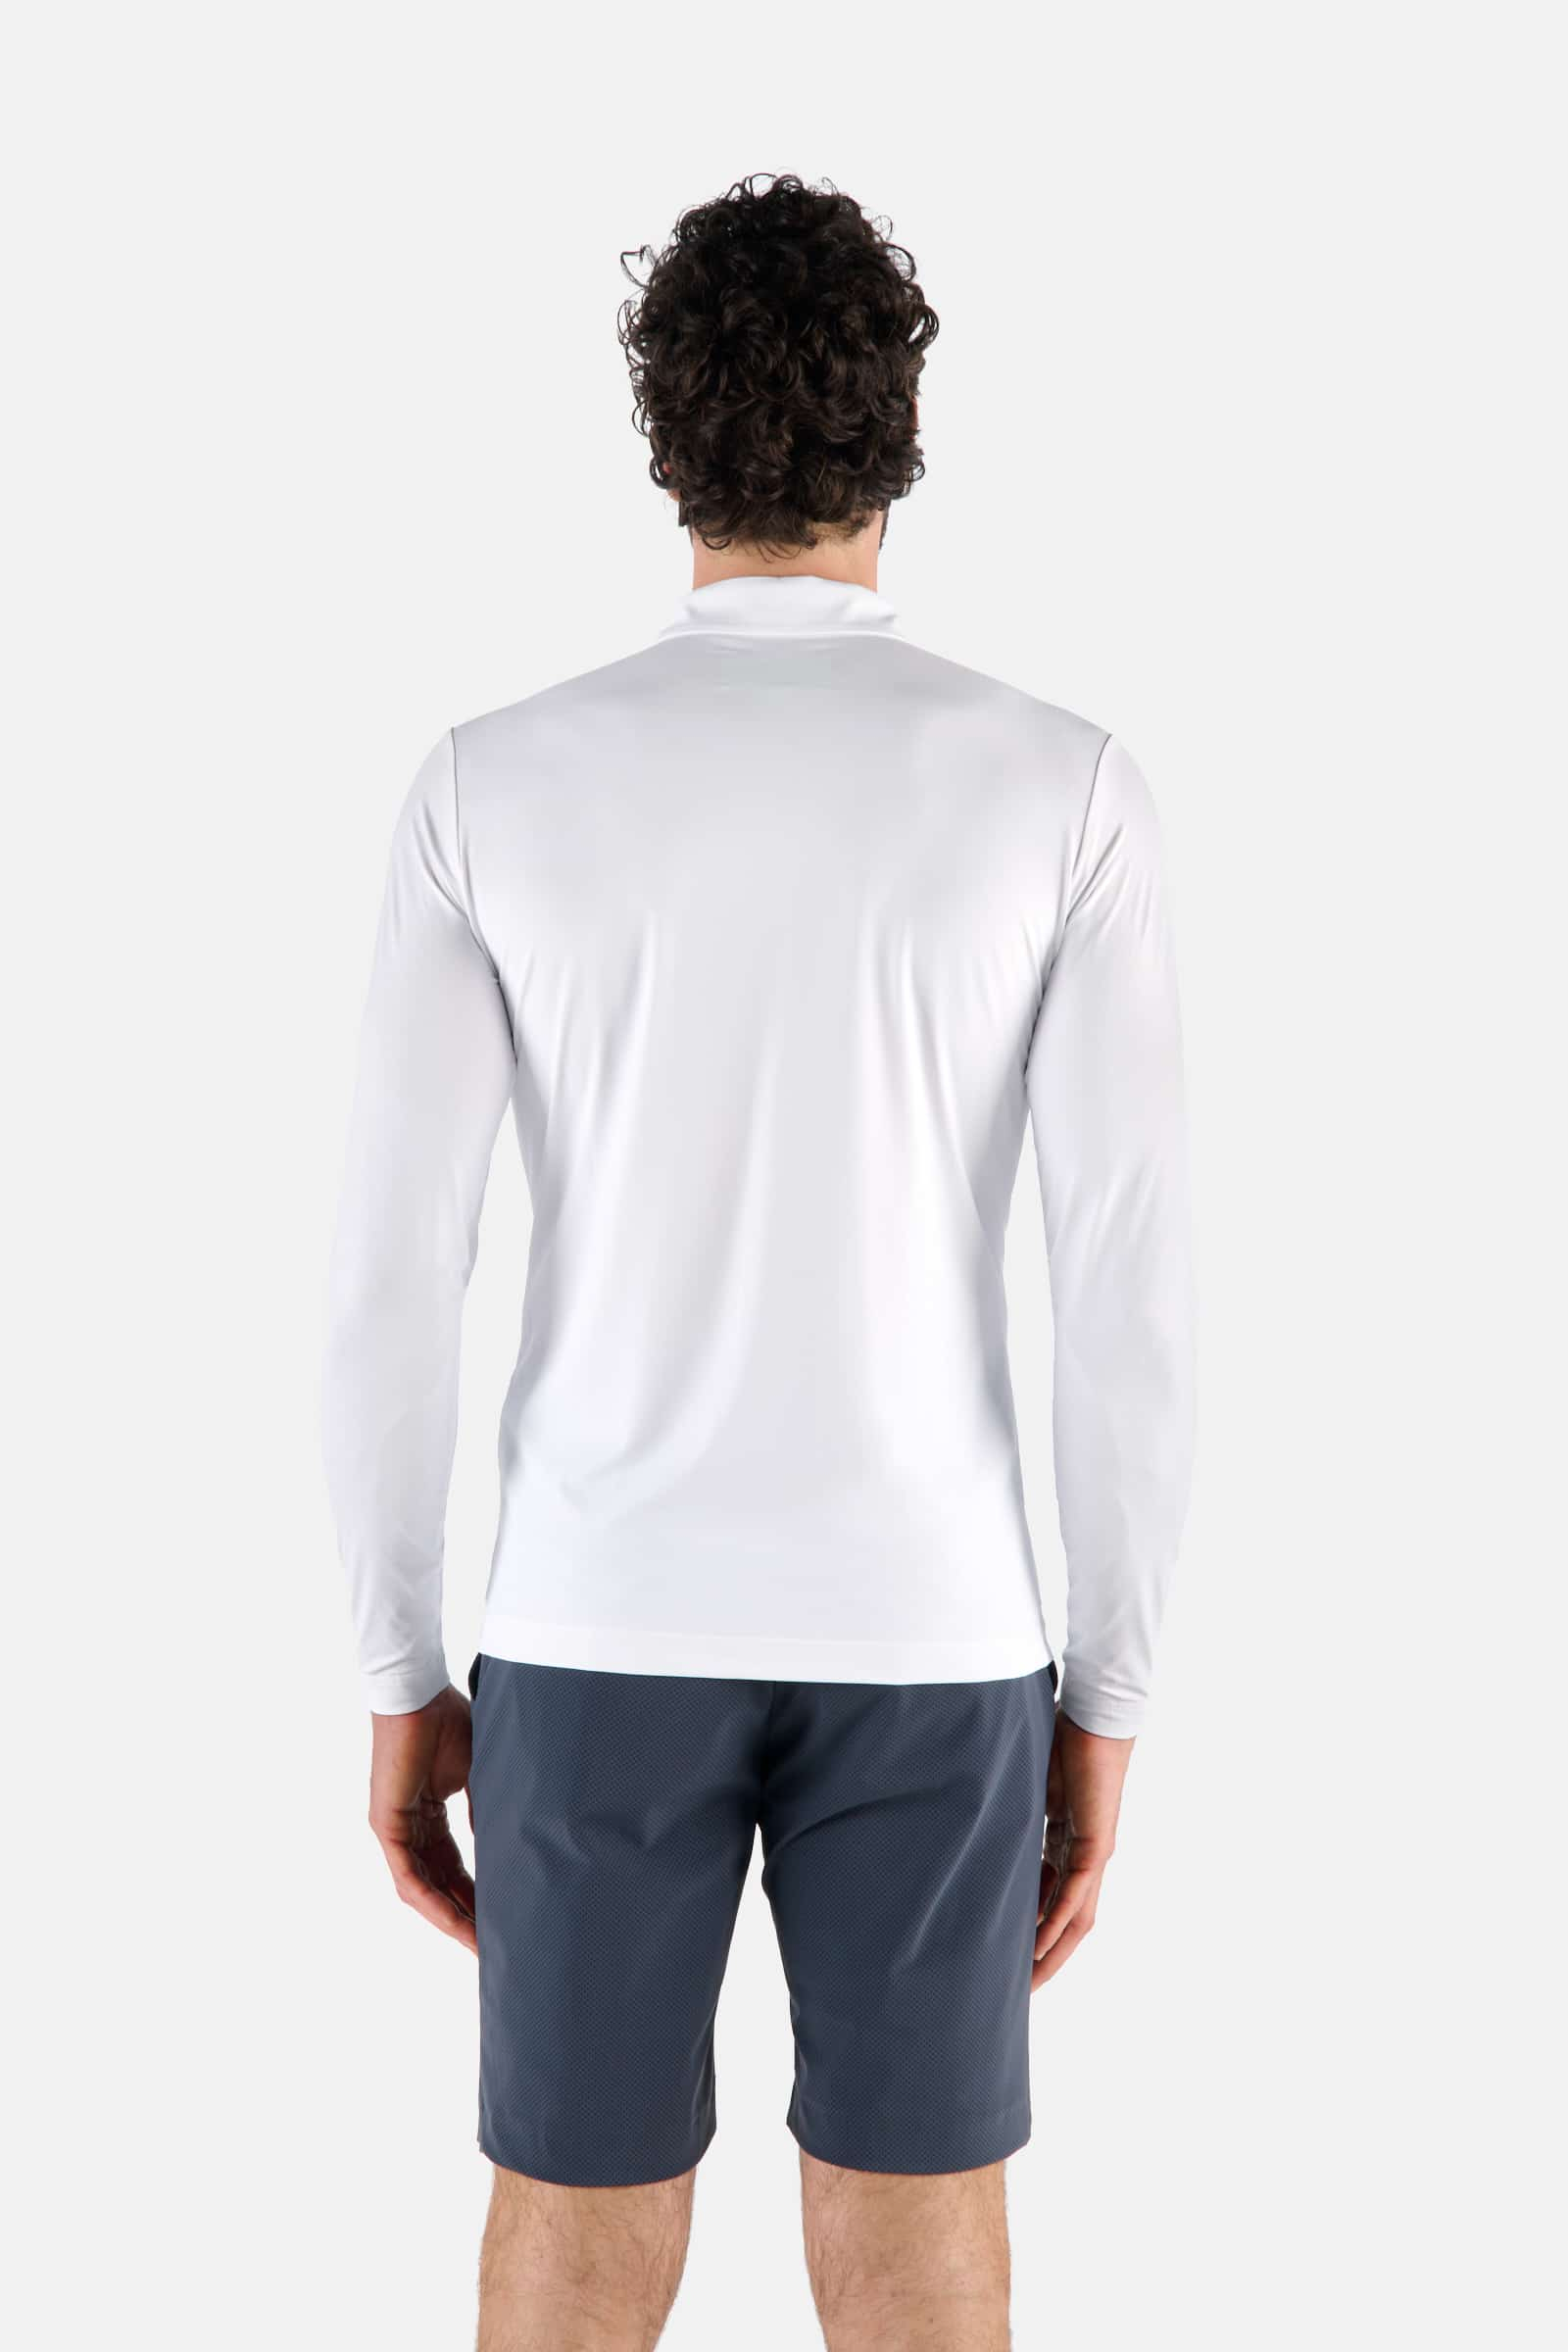 POCKET POLO LS - WHITE - Hydrogen - Luxury Sportwear